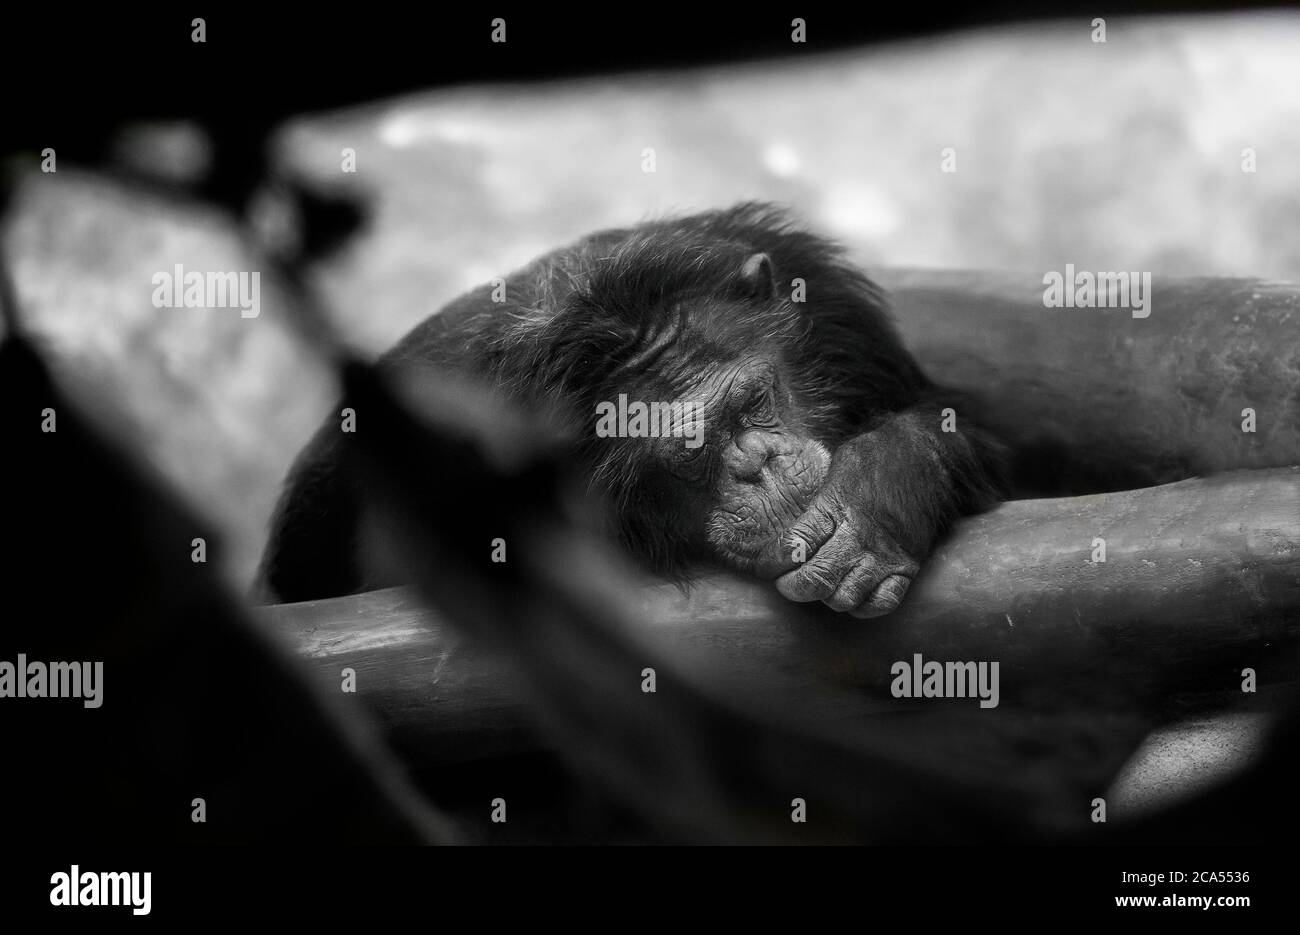 Ritratto espressivo di scimpanzé pensivo, che evoca sensazioni tristi e serie, in bianco e nero. Foto Stock